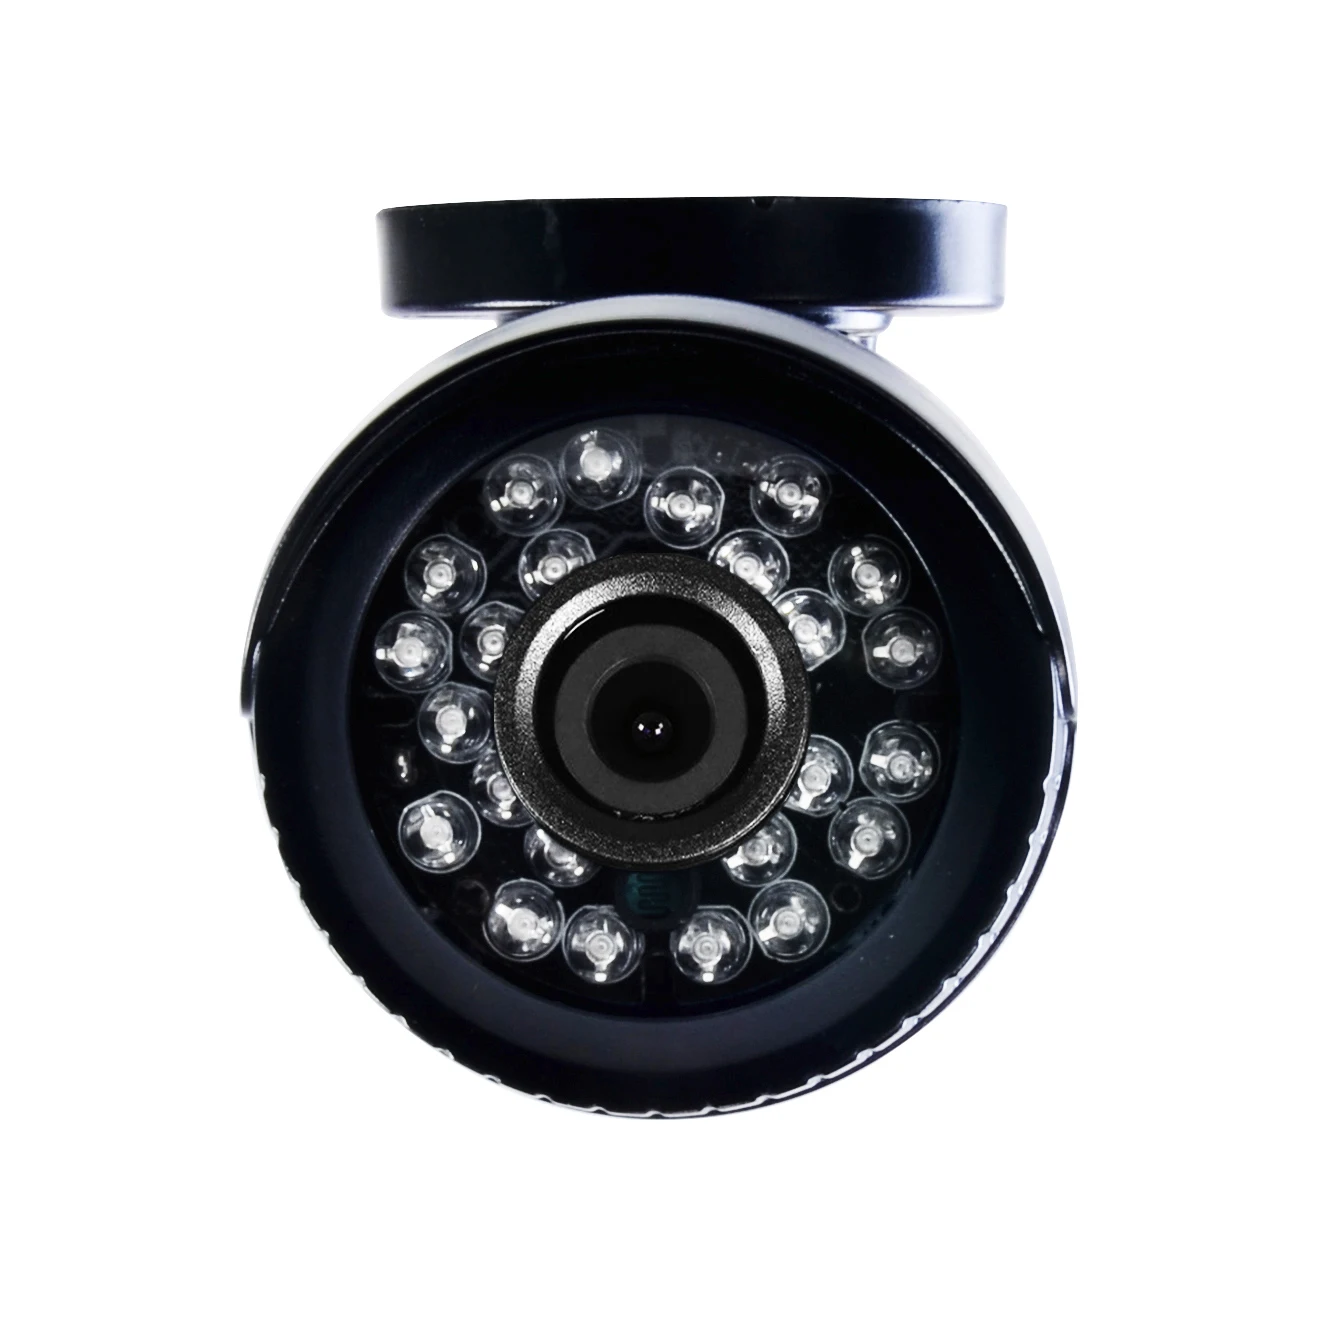 SONY IMX323 3000Tvl полностью AHD CCTV камера HD 720P/960P/1080P Цифровая Водонепроницаемая наружная